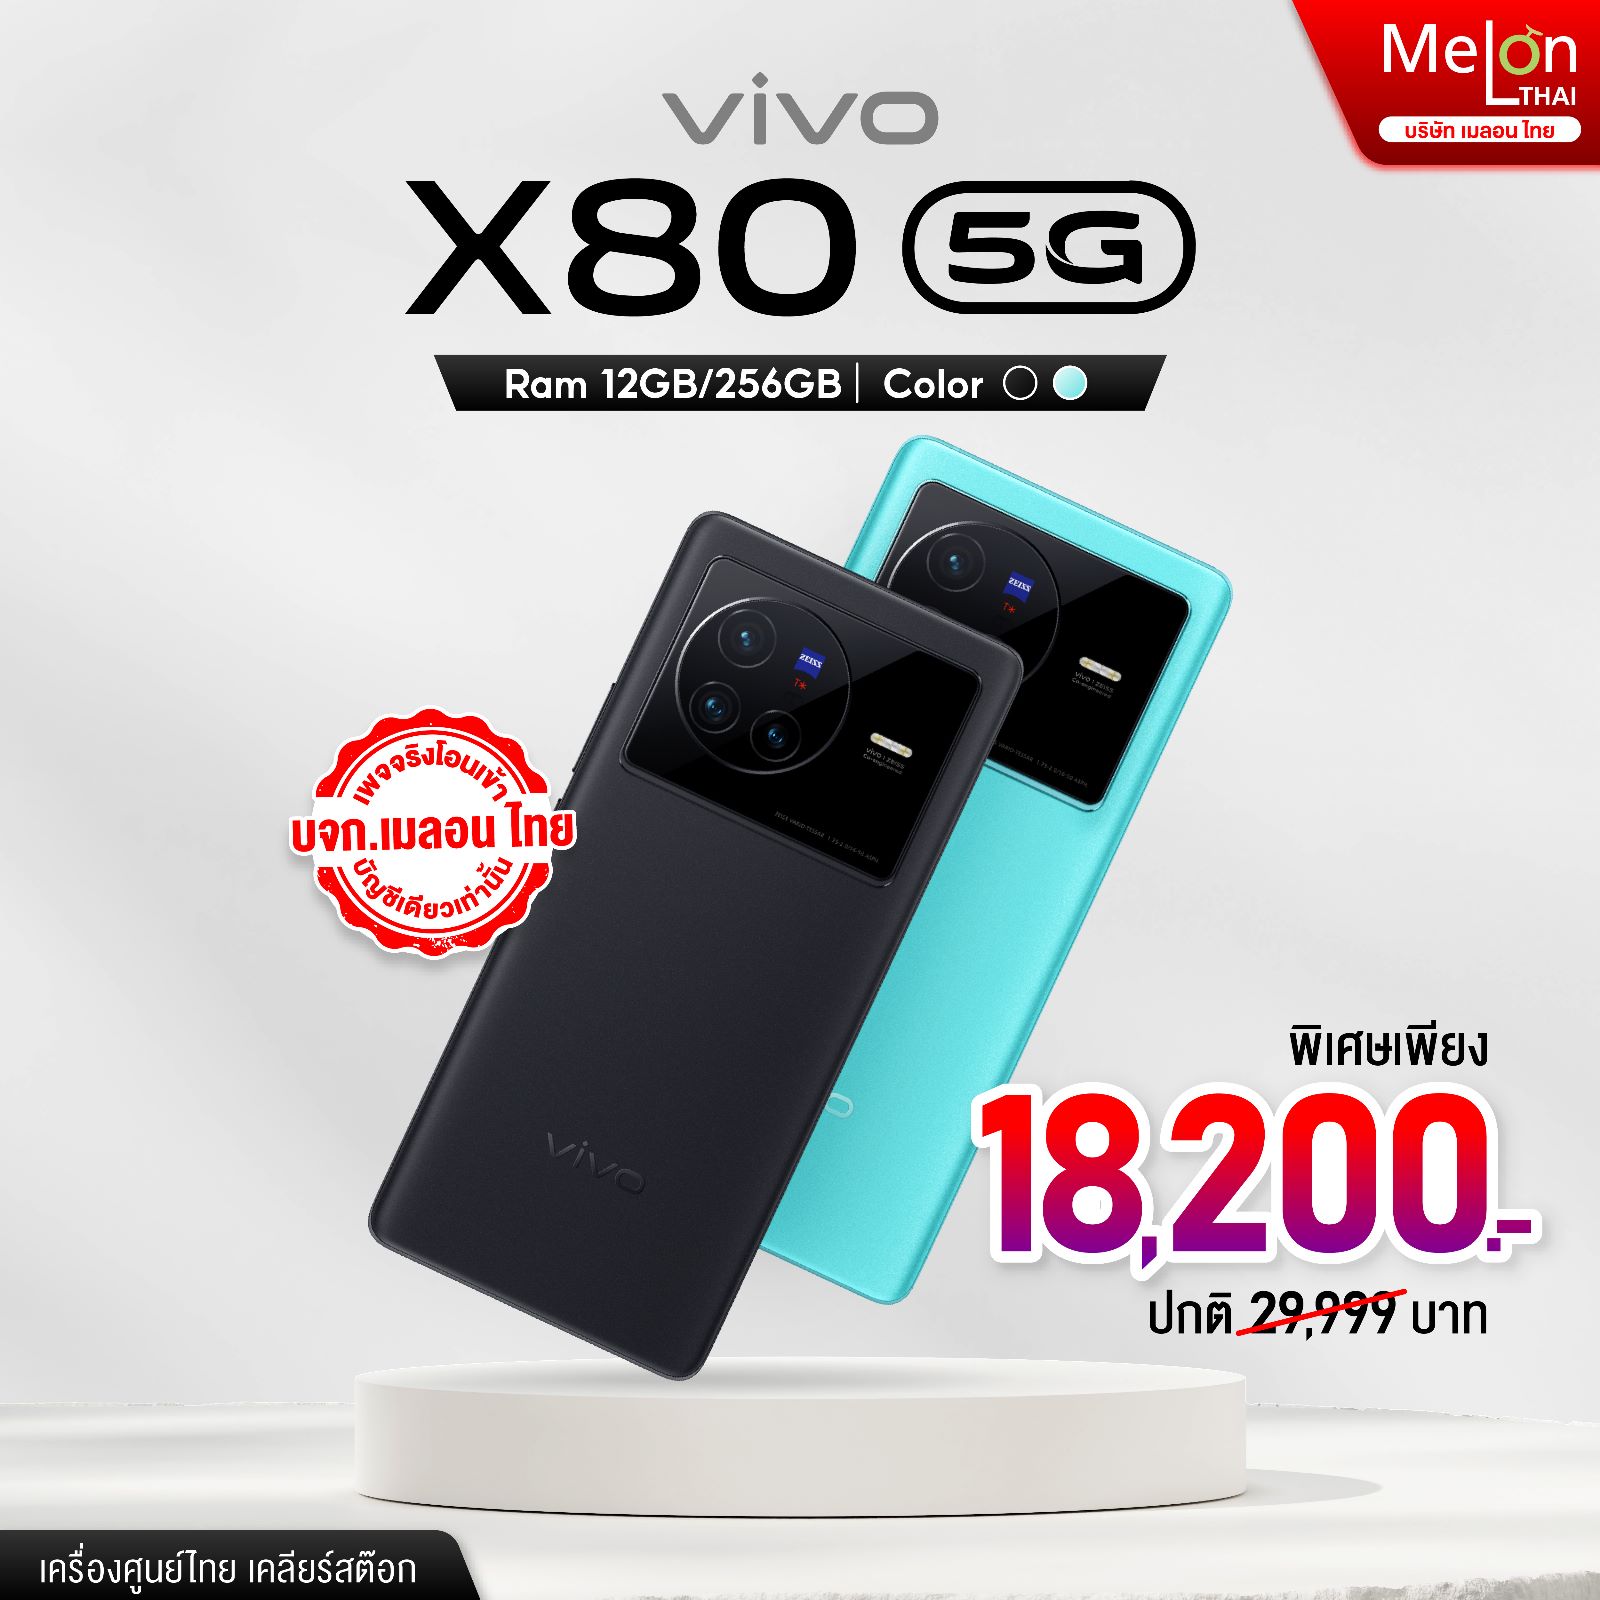 Vivo x80 5G Ram 12/256GB มือถือราคาถูก สเปคดี กล้อง 6.78 นิ้ว ออกใบกำกับภาษีได้ 